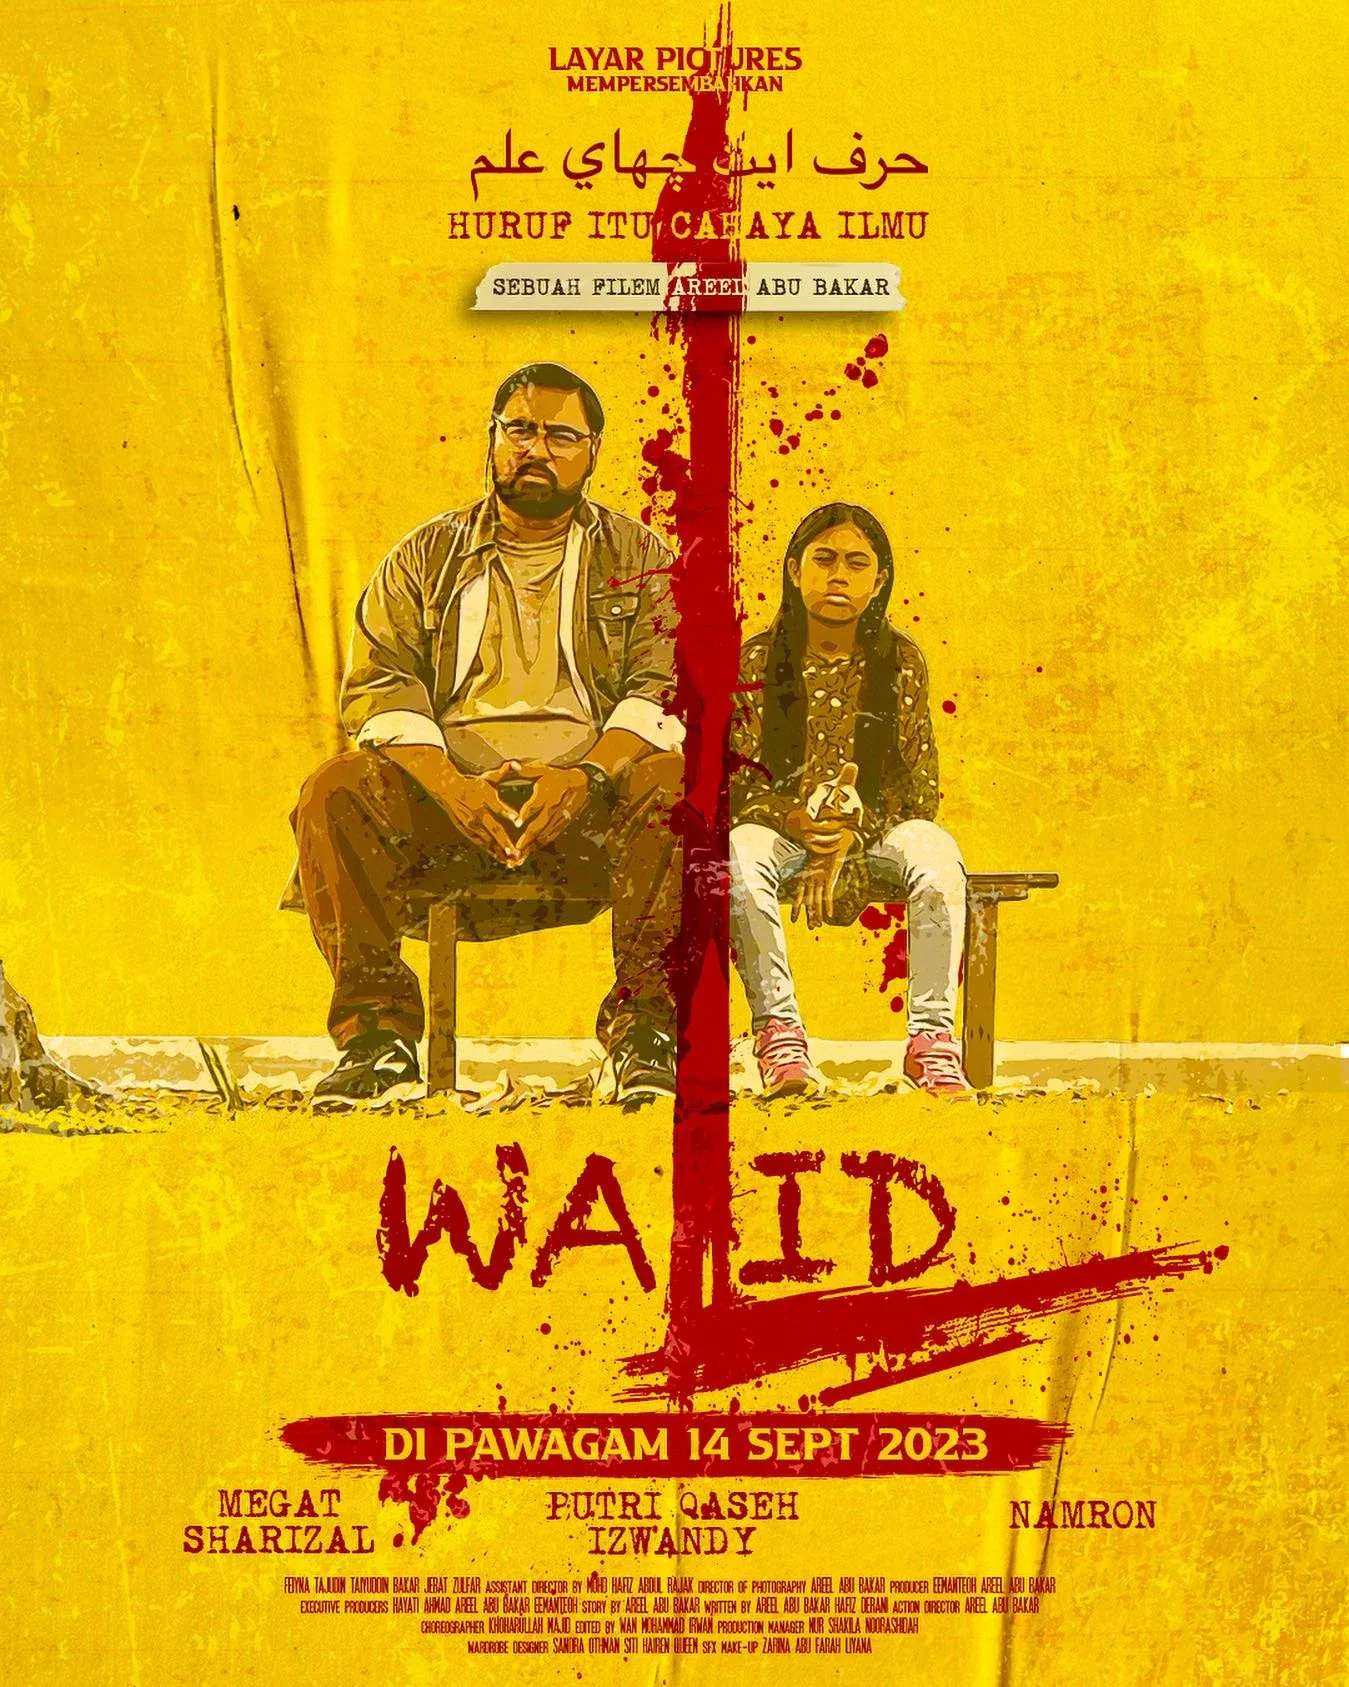 Filem Walid Di Pawagam Mulai 14 September 2023